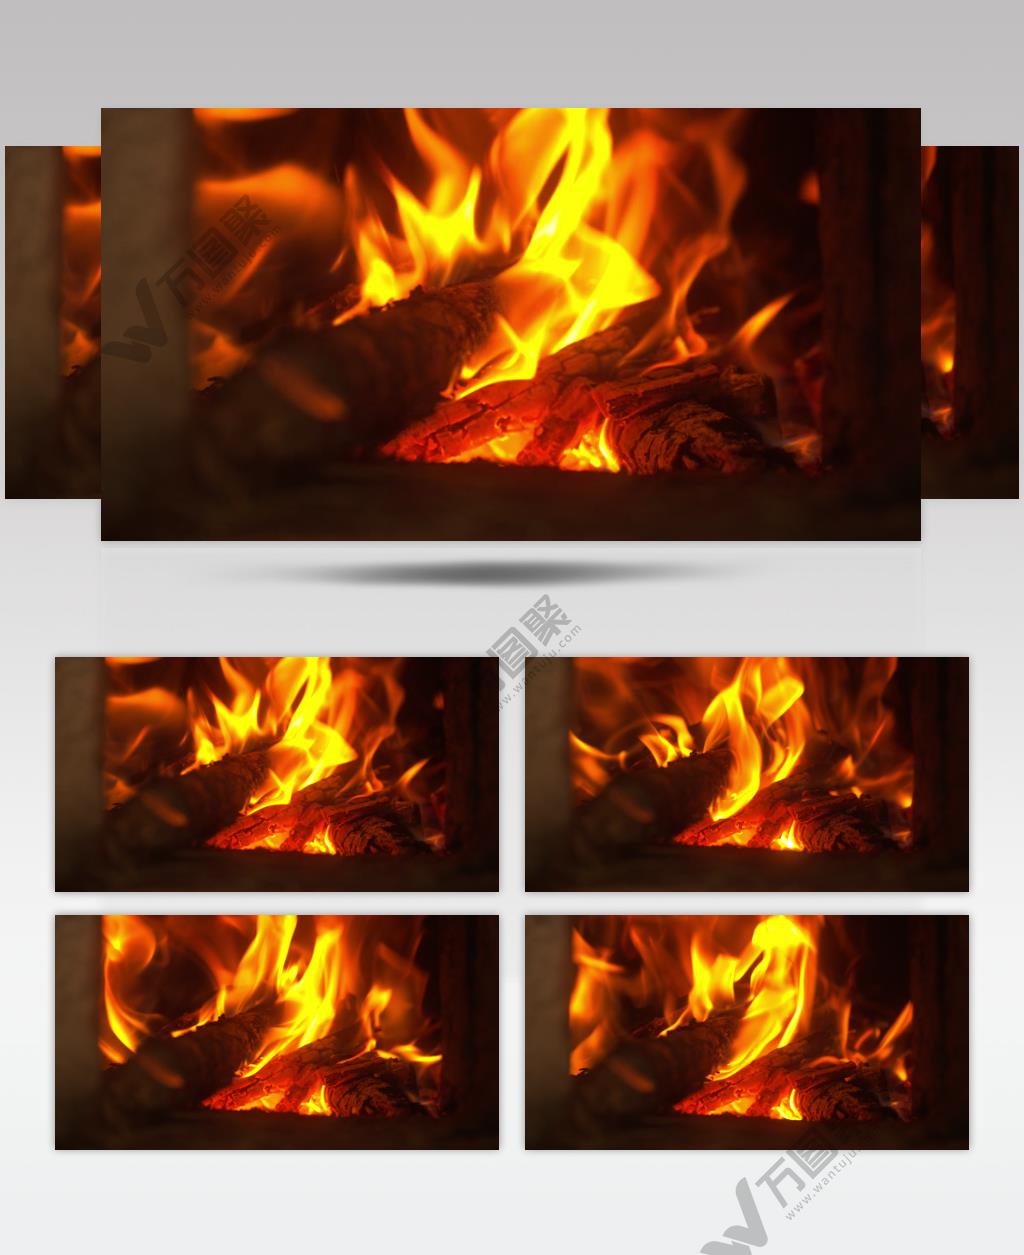 燃烧的炭火木柴土灶台篝火